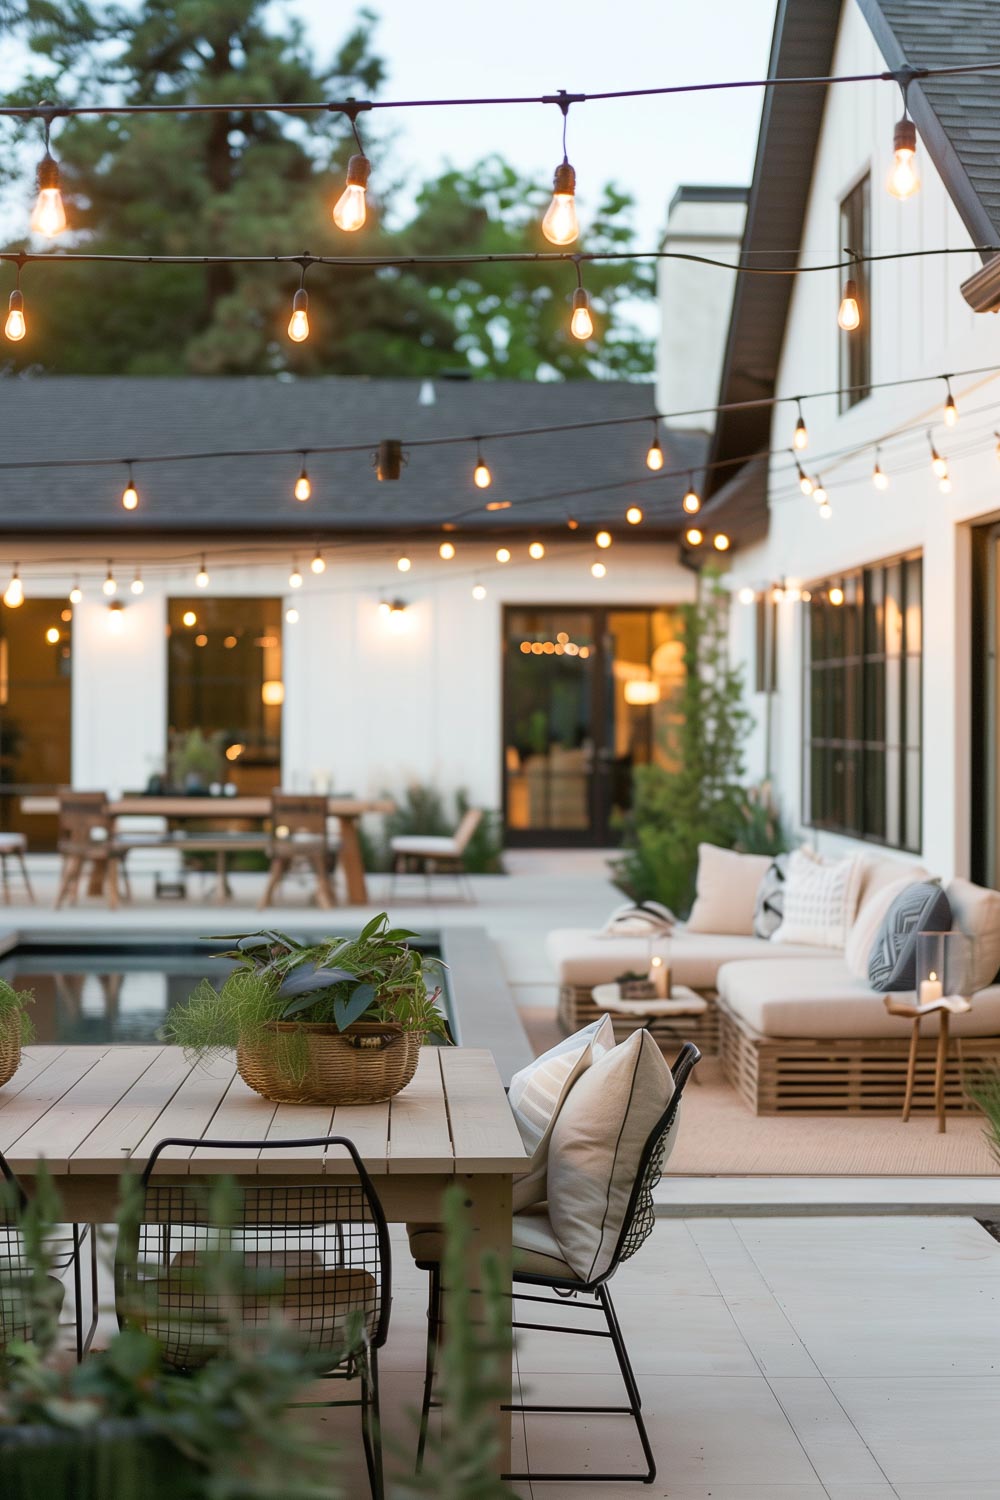 10 stunning backyard design ideas for summer inspiration